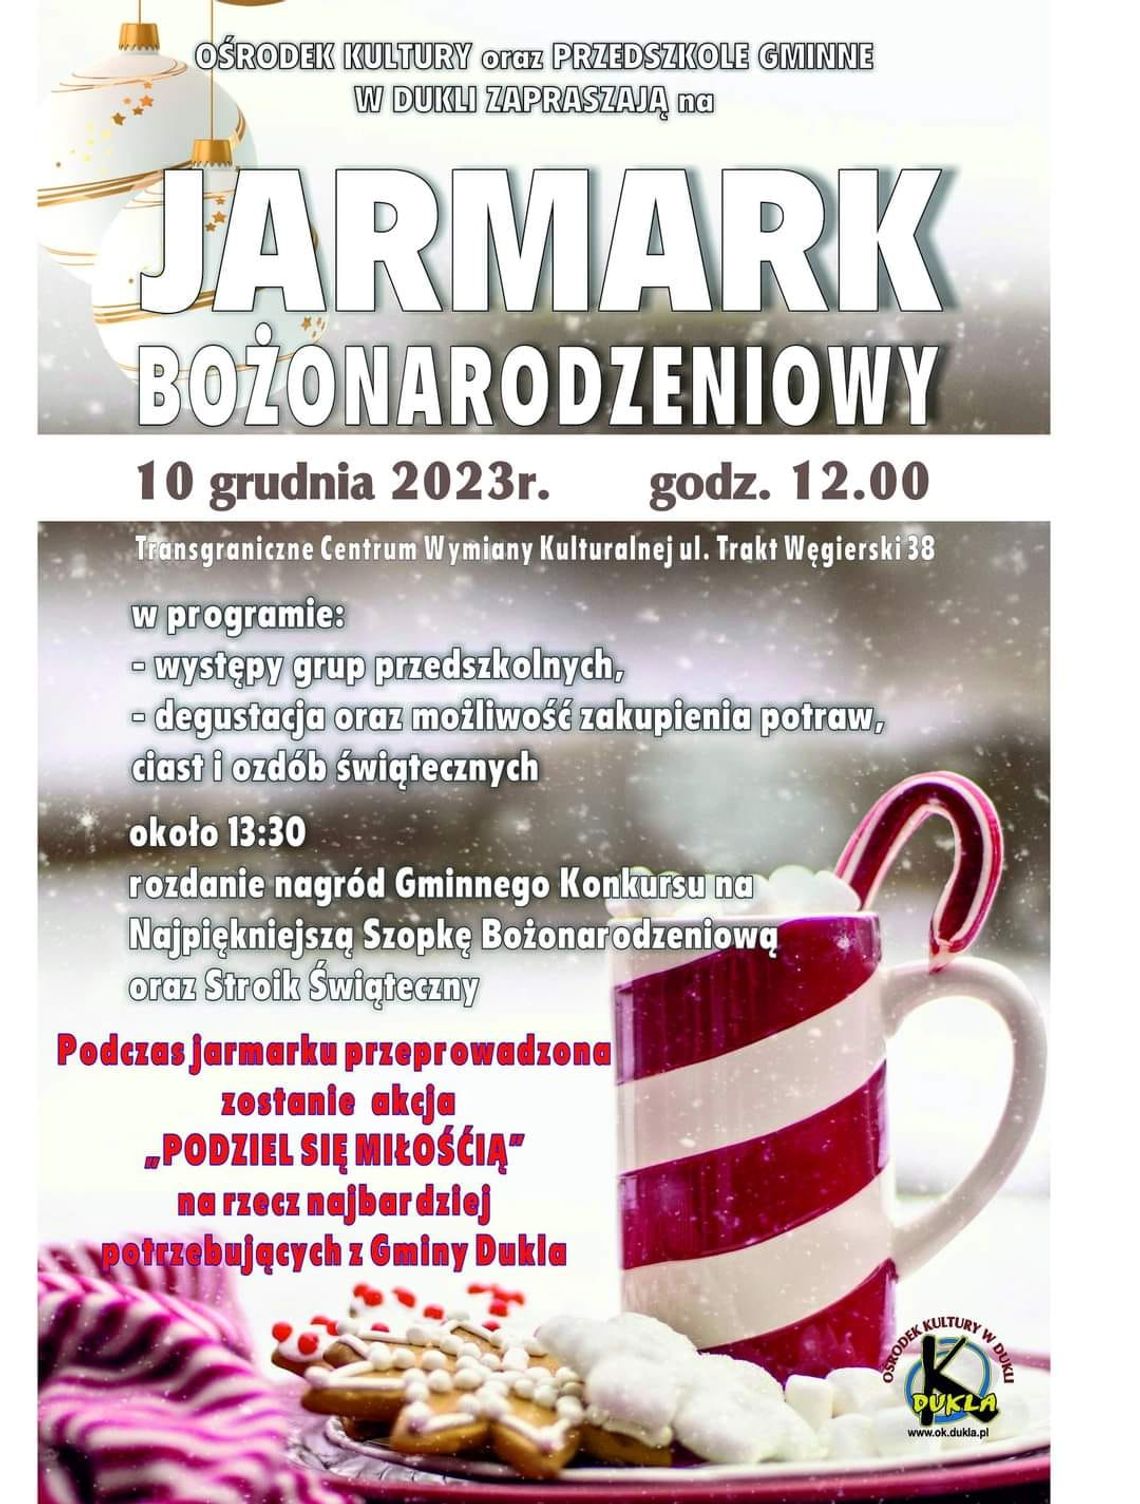 Jarmark Bożonarodzeniowy w Dukli | halogorlice.info